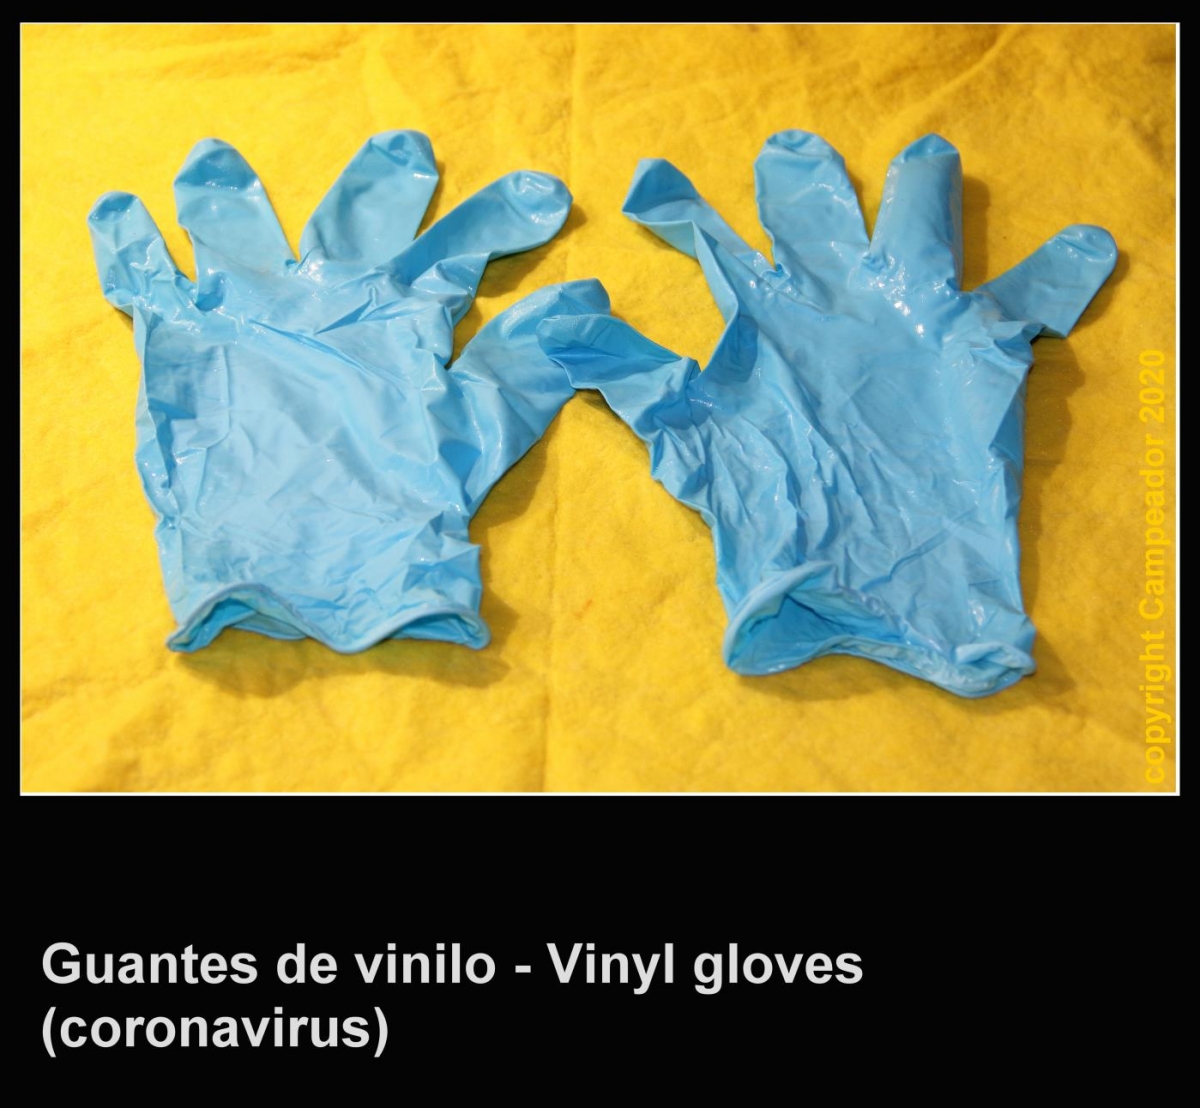 Vinyl gloves - Guantes de vinilo. Coronavirus 20-abril-2020. Photo by Campeador (Mario Cid).